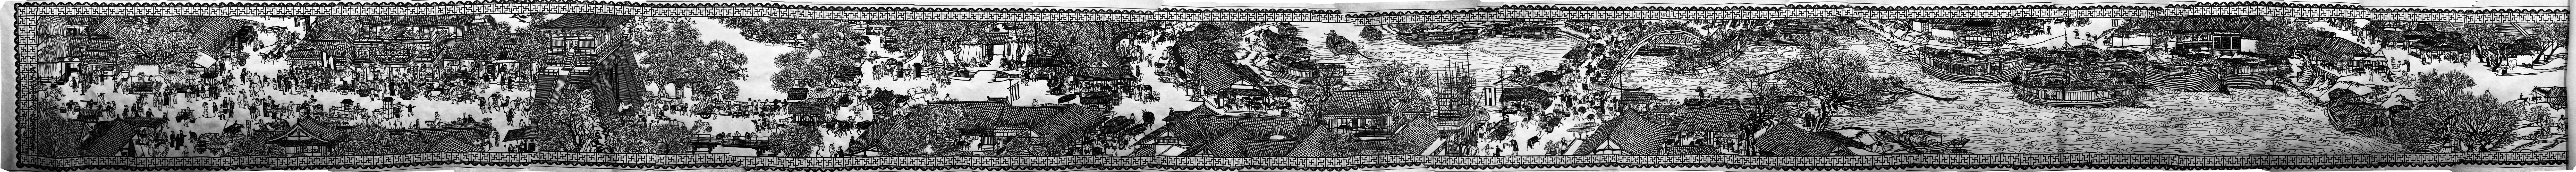 File:20120730甘肃兰州黄河北岸白塔山下博物馆展品清明上河图剪纸 